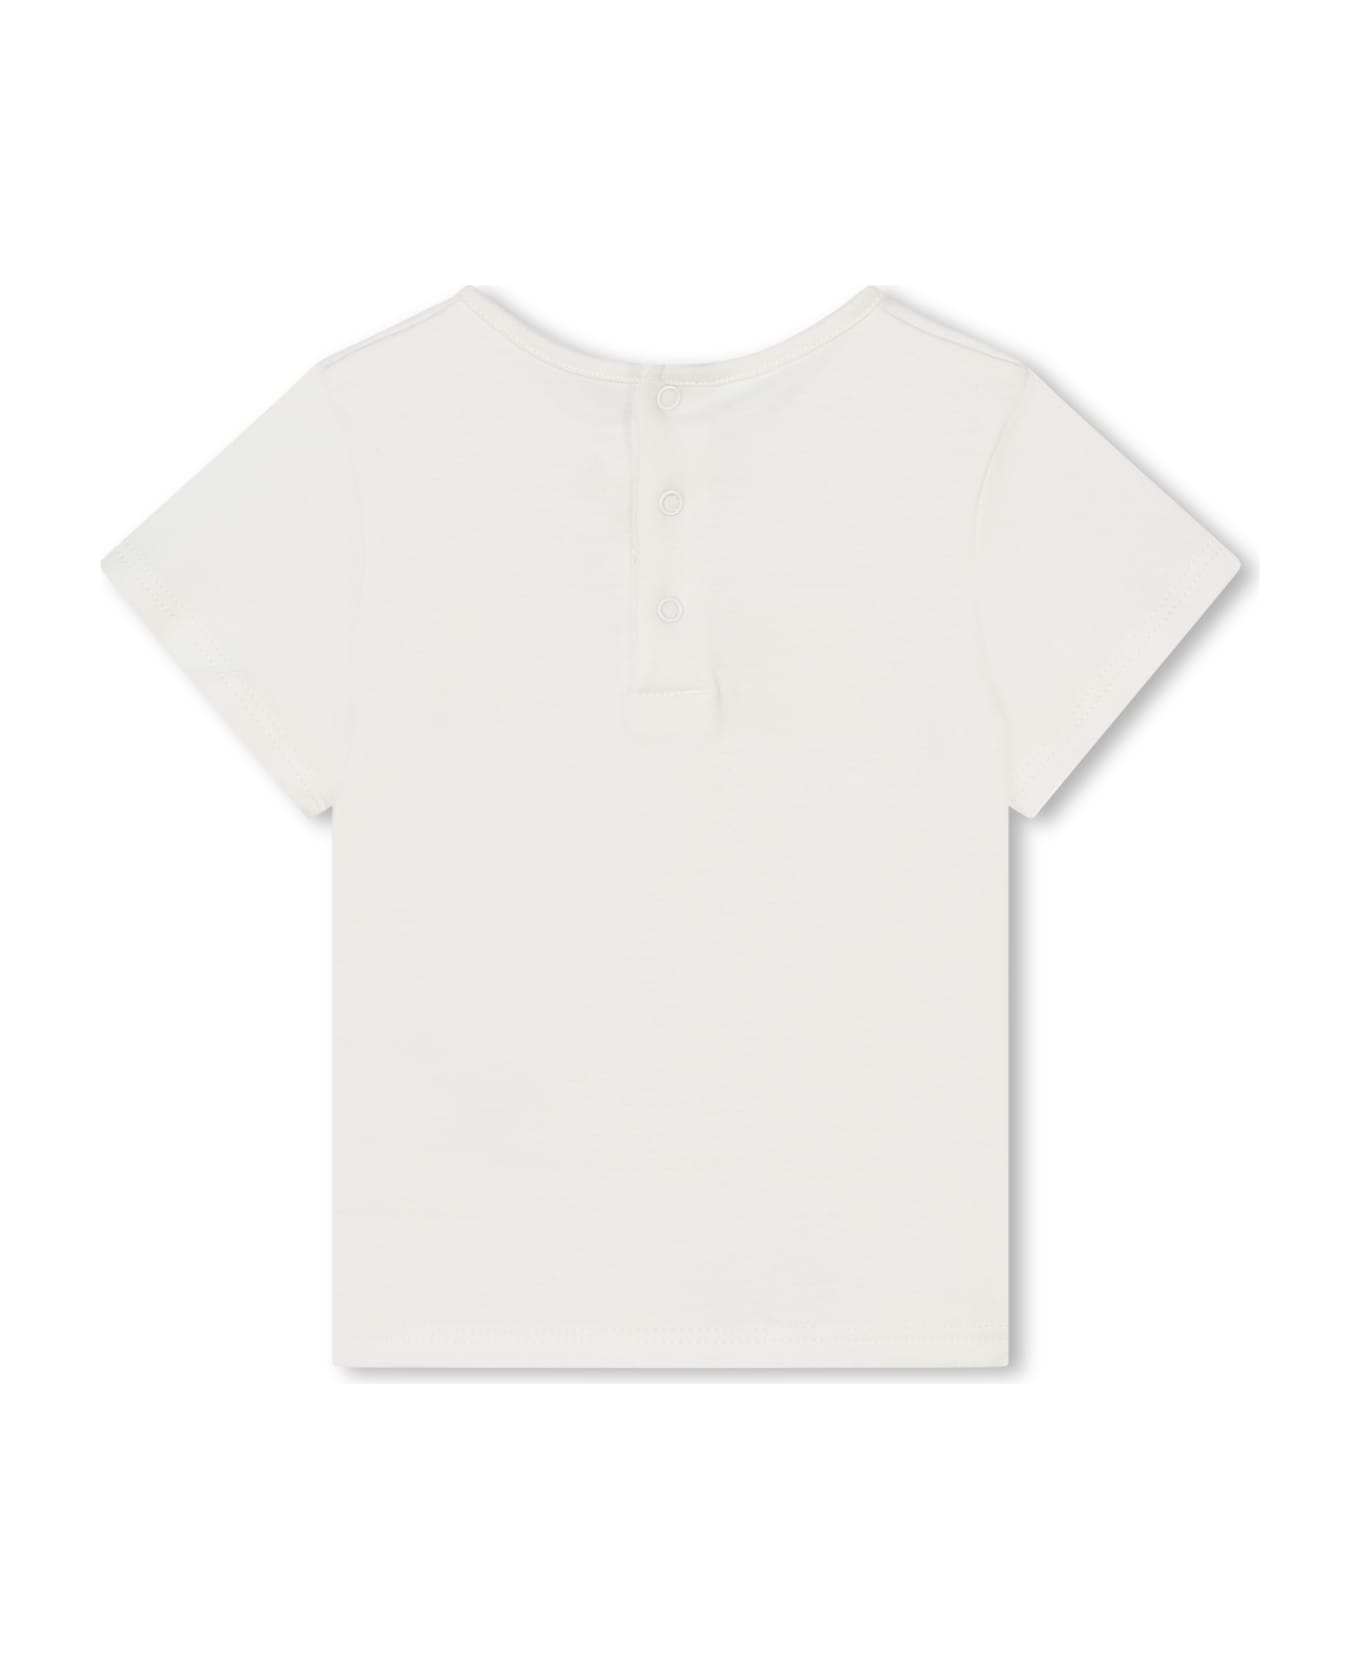 Chloé T-shirt With Print - White